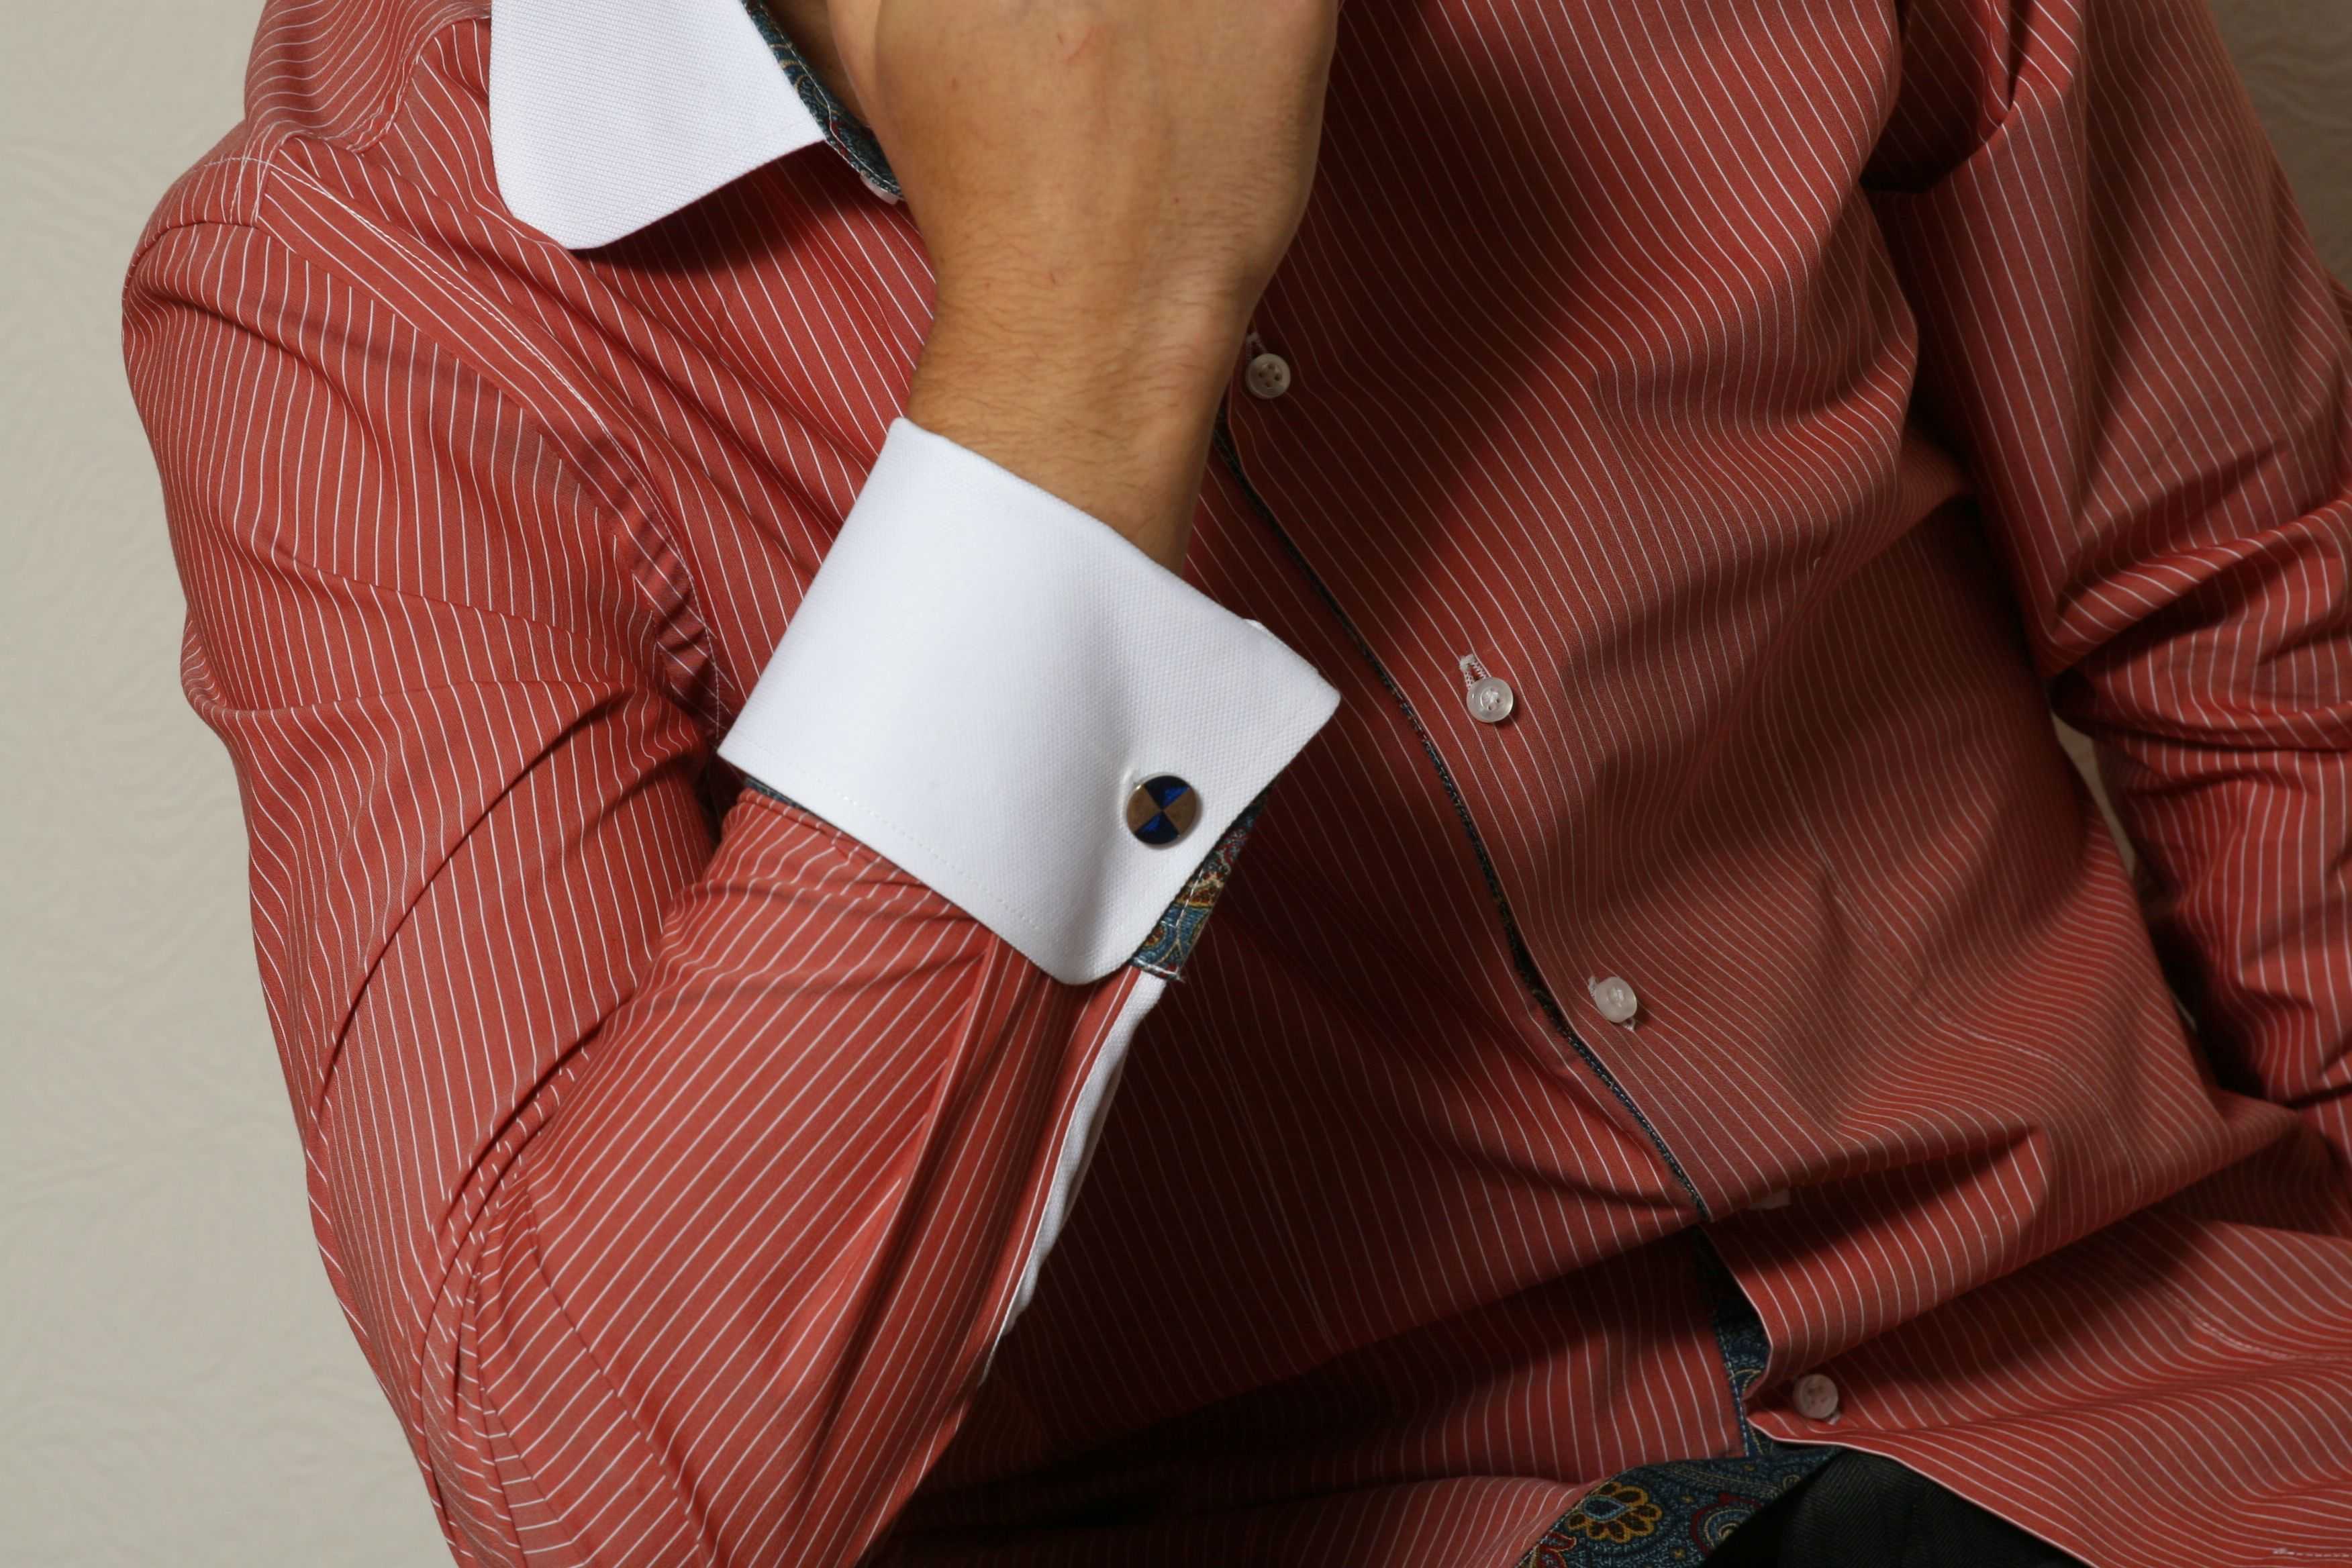 Как носить запонки правильно | men's outfits